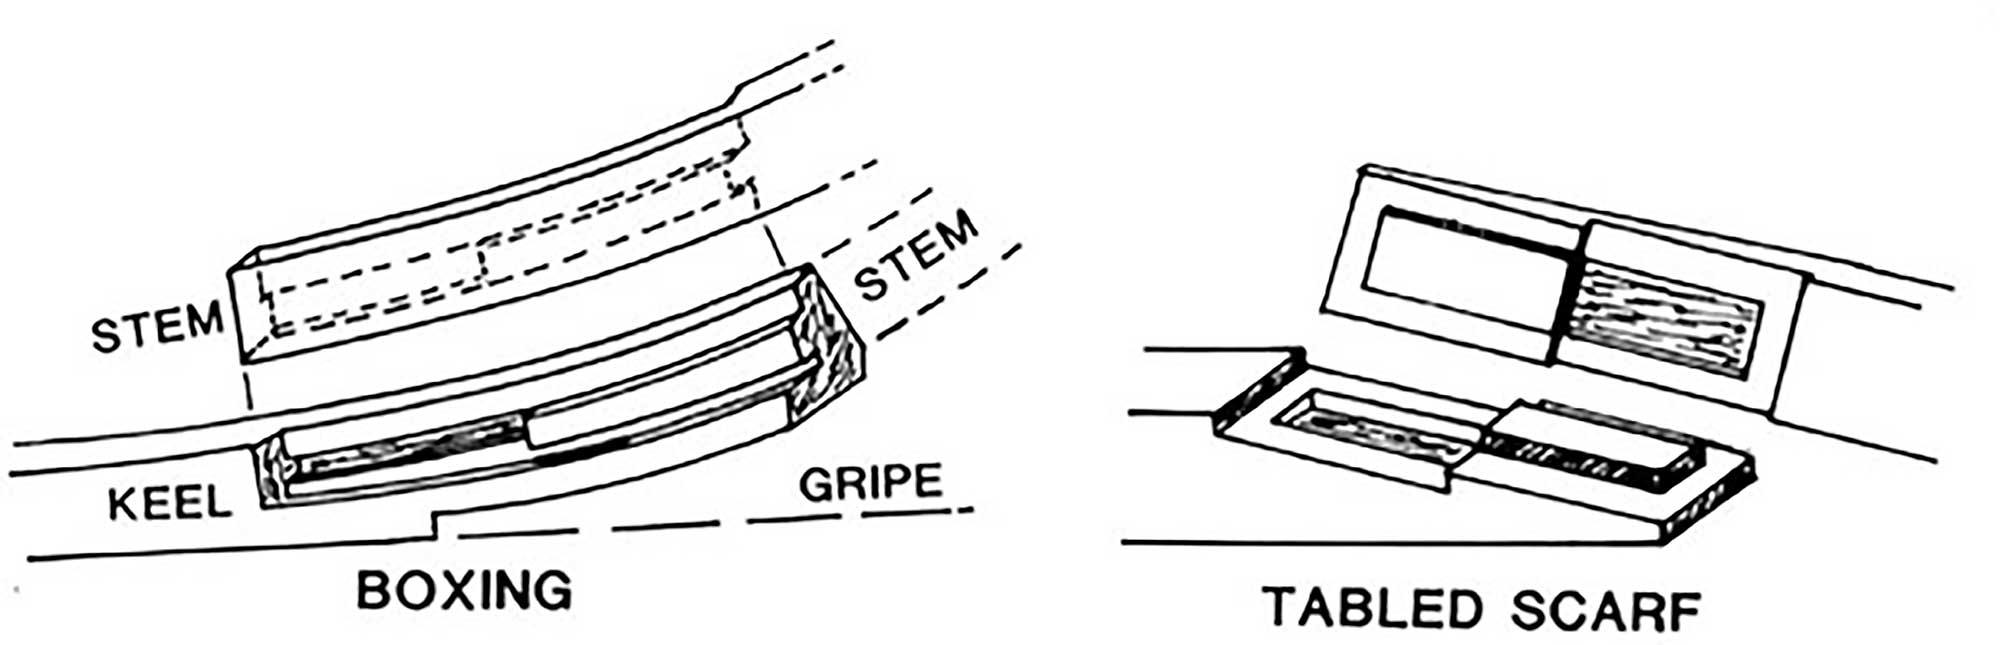 Box table scarph schematic